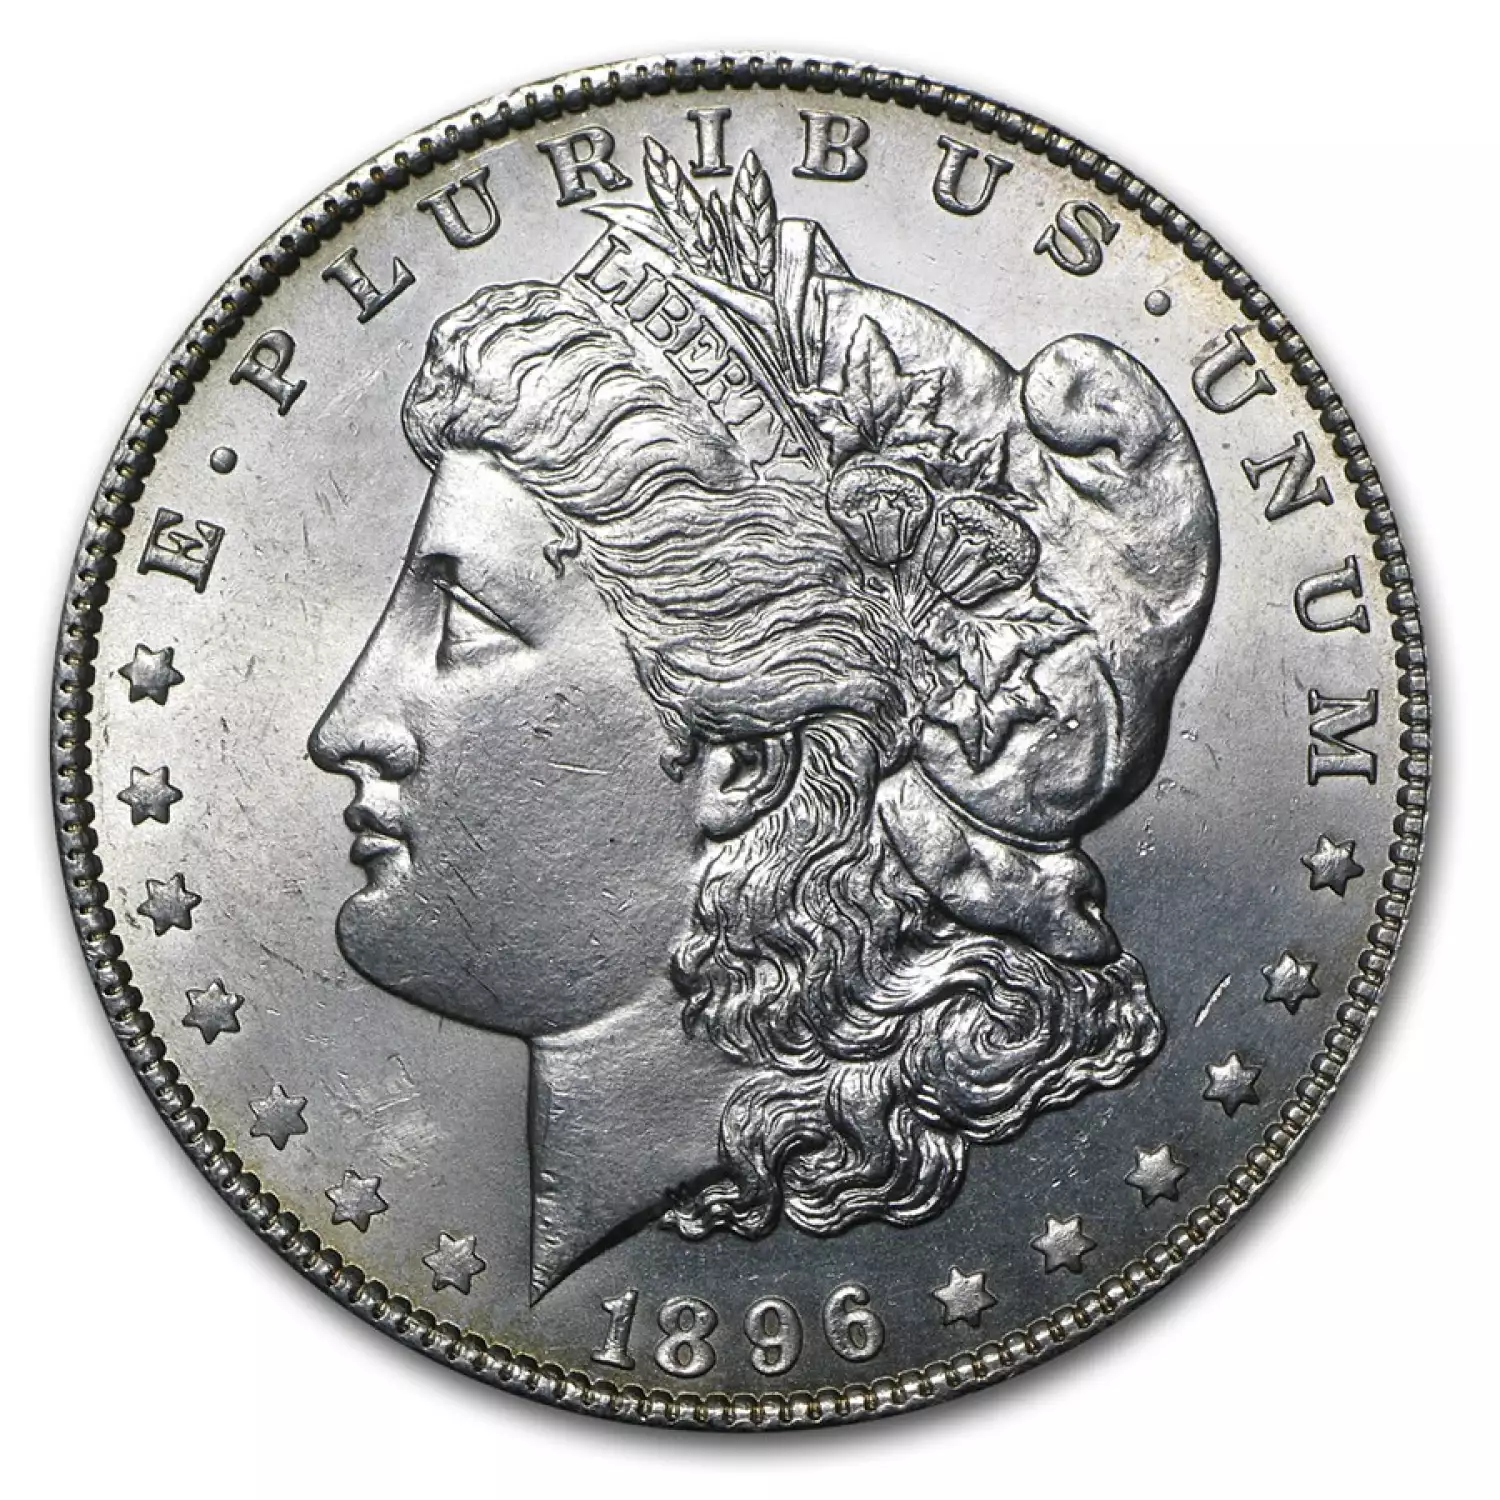 Morgan Dollar (1896) - BU